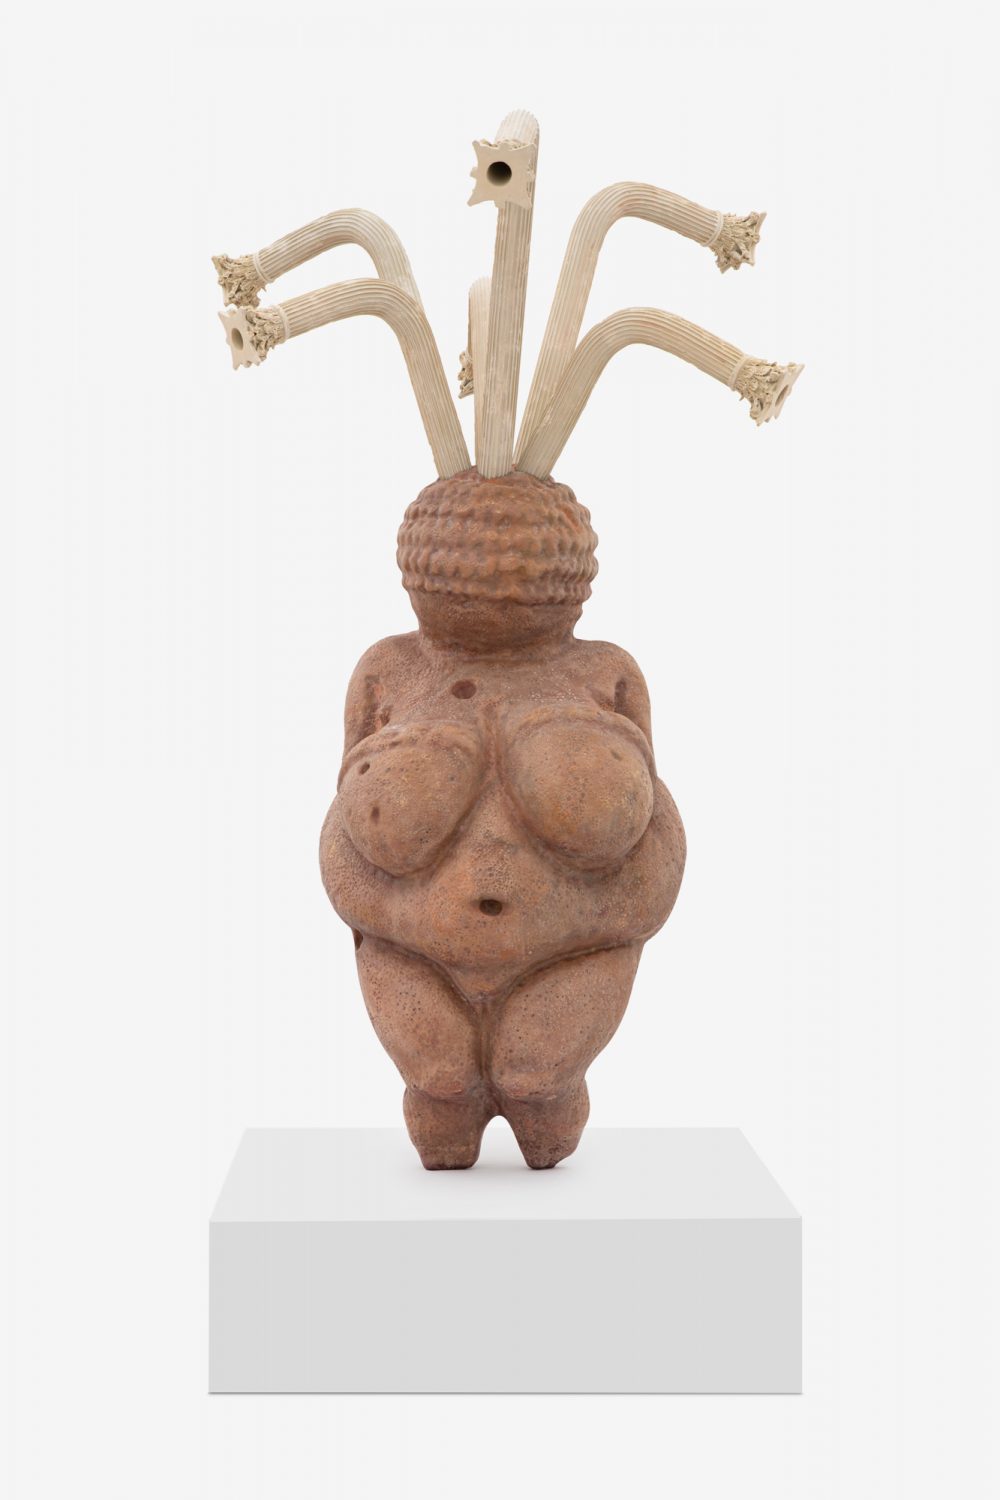 Beverage (The Venus of Willendorf)